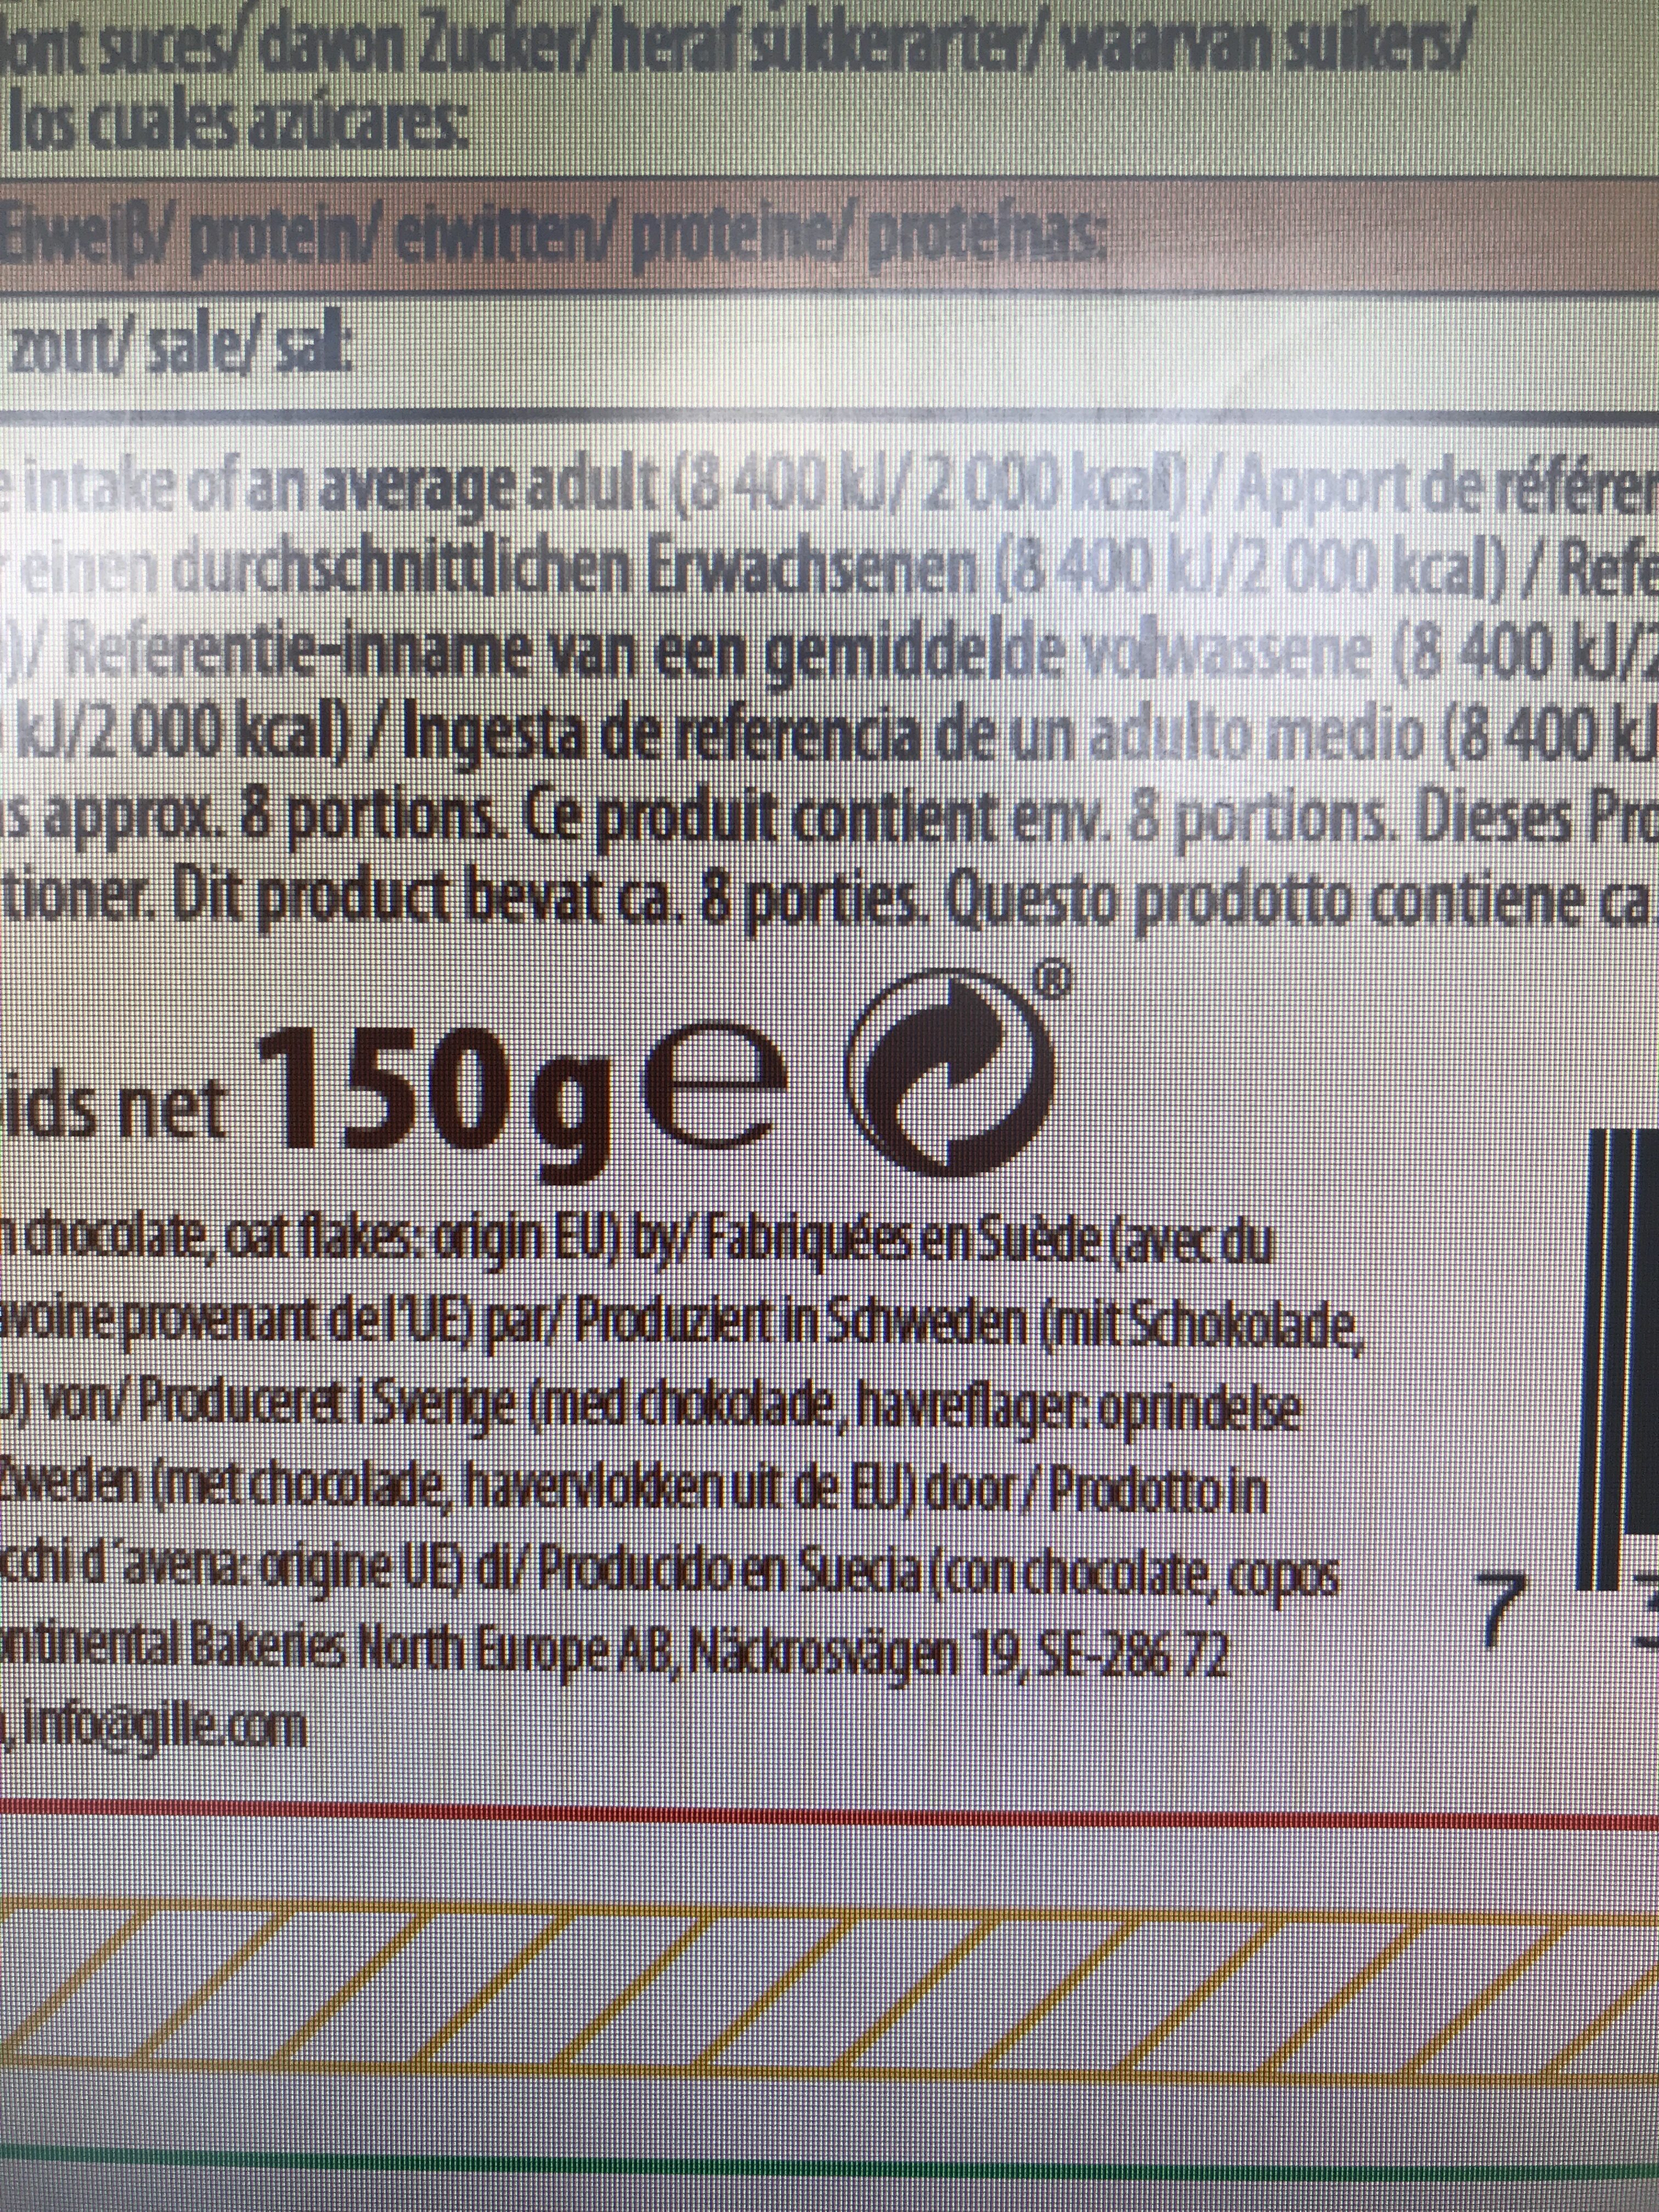 Double chocolate crisps - Instruction de recyclage et/ou informations d'emballage